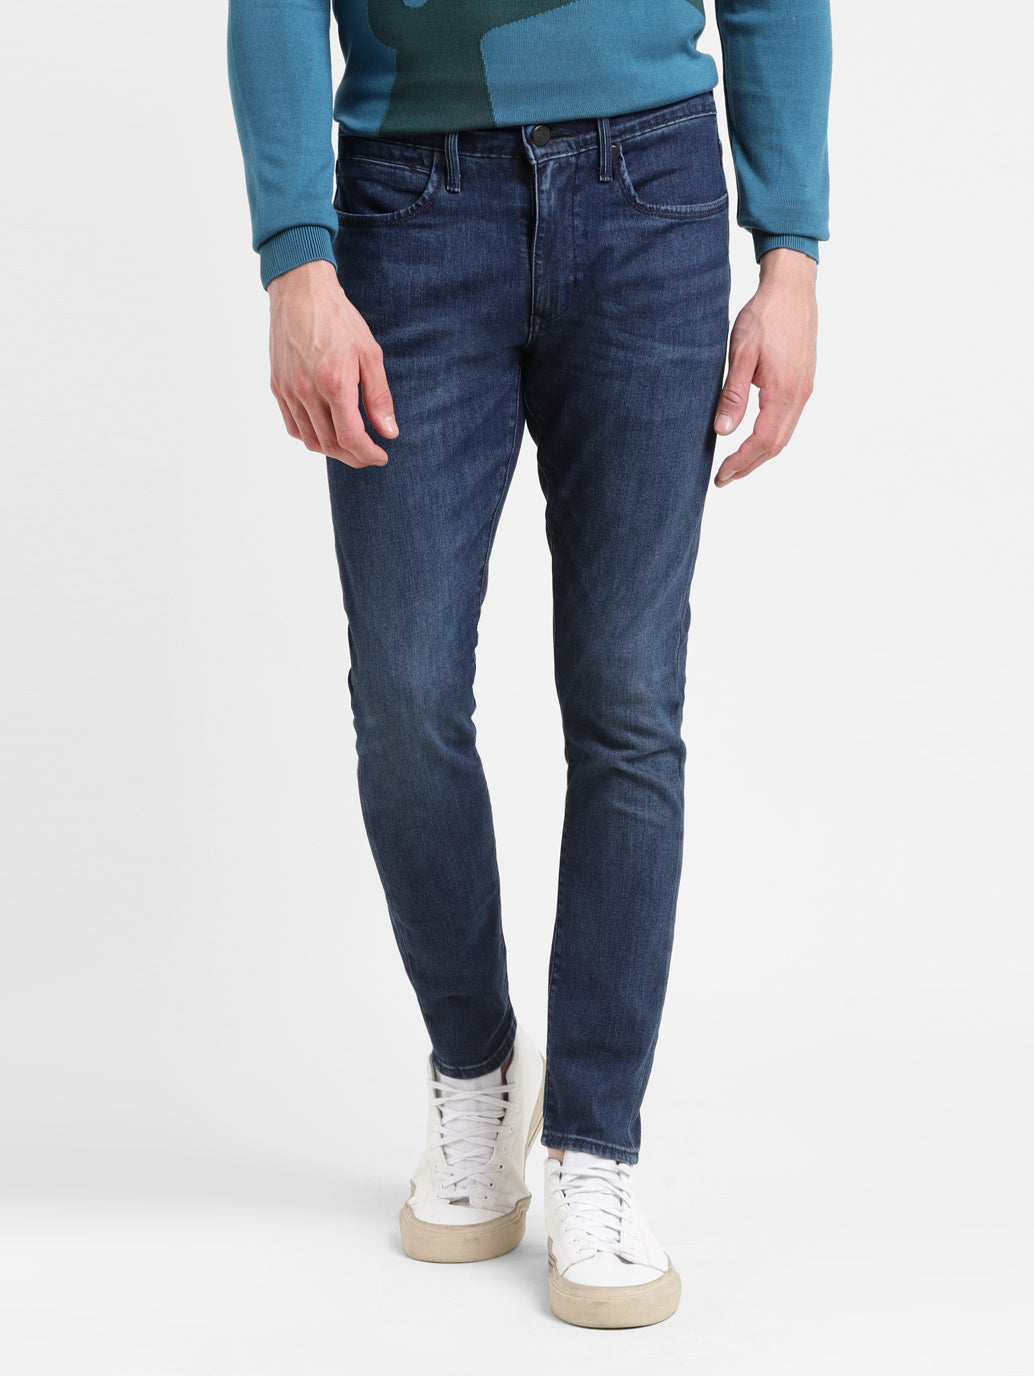 Men's Dark Indigo Skinny Taper Fit Jeans